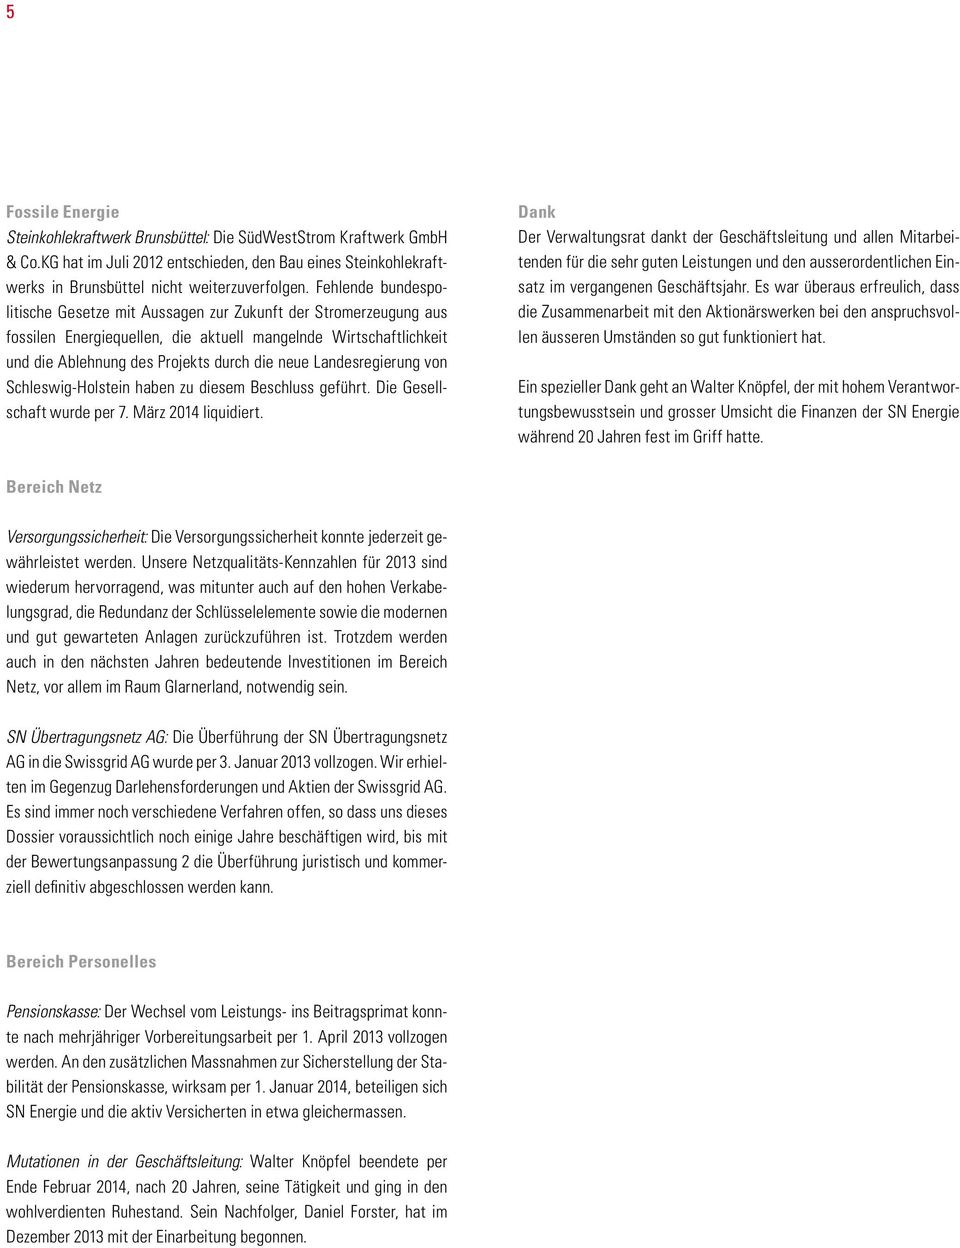 Landesregierung von Schleswig-Holstein haben zu diesem Beschluss geführt. Die Gesellschaft wurde per 7. März 2014 liquidiert.